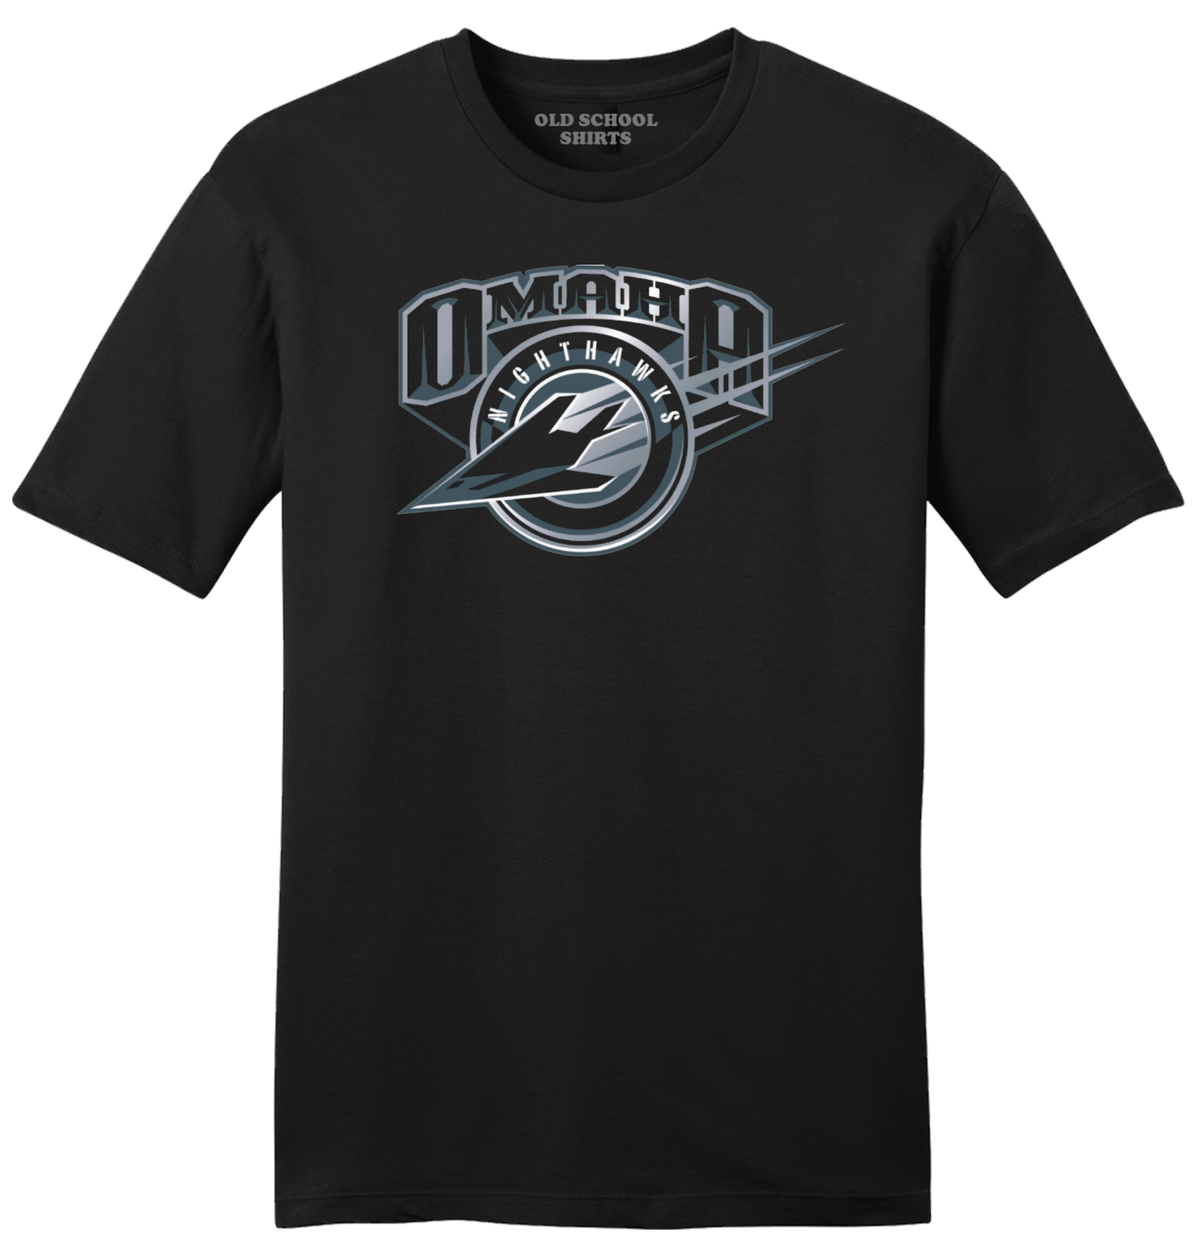 Omaha Nighthawks T-shirt black